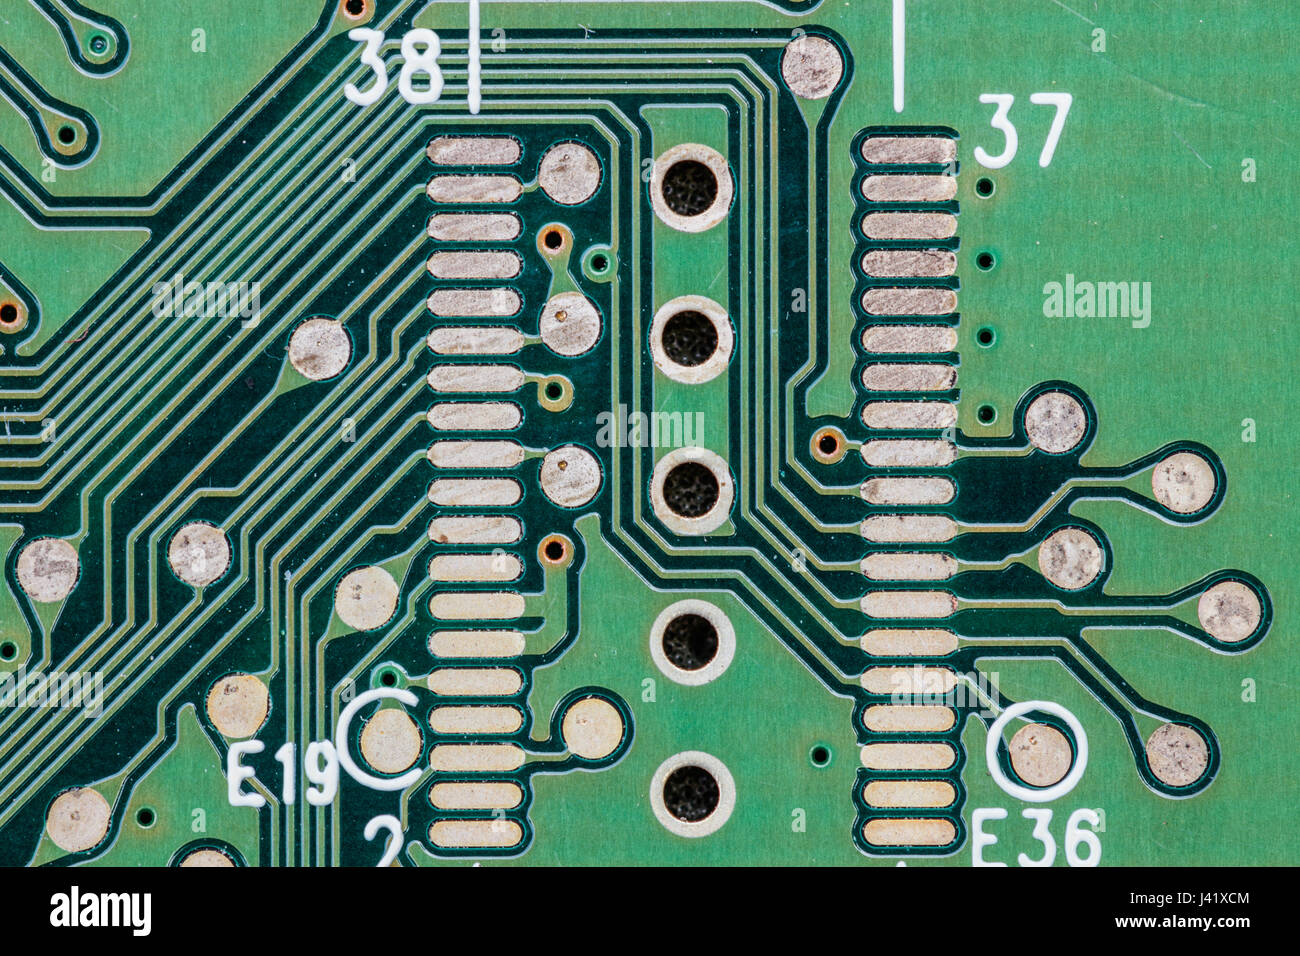 Detail einer grünen Festplatte gedrucktes Leiterplatte (PCB) mit leitfähigen Tracks und vertikale Interconnect Zugriffe (VIA). Stockfoto